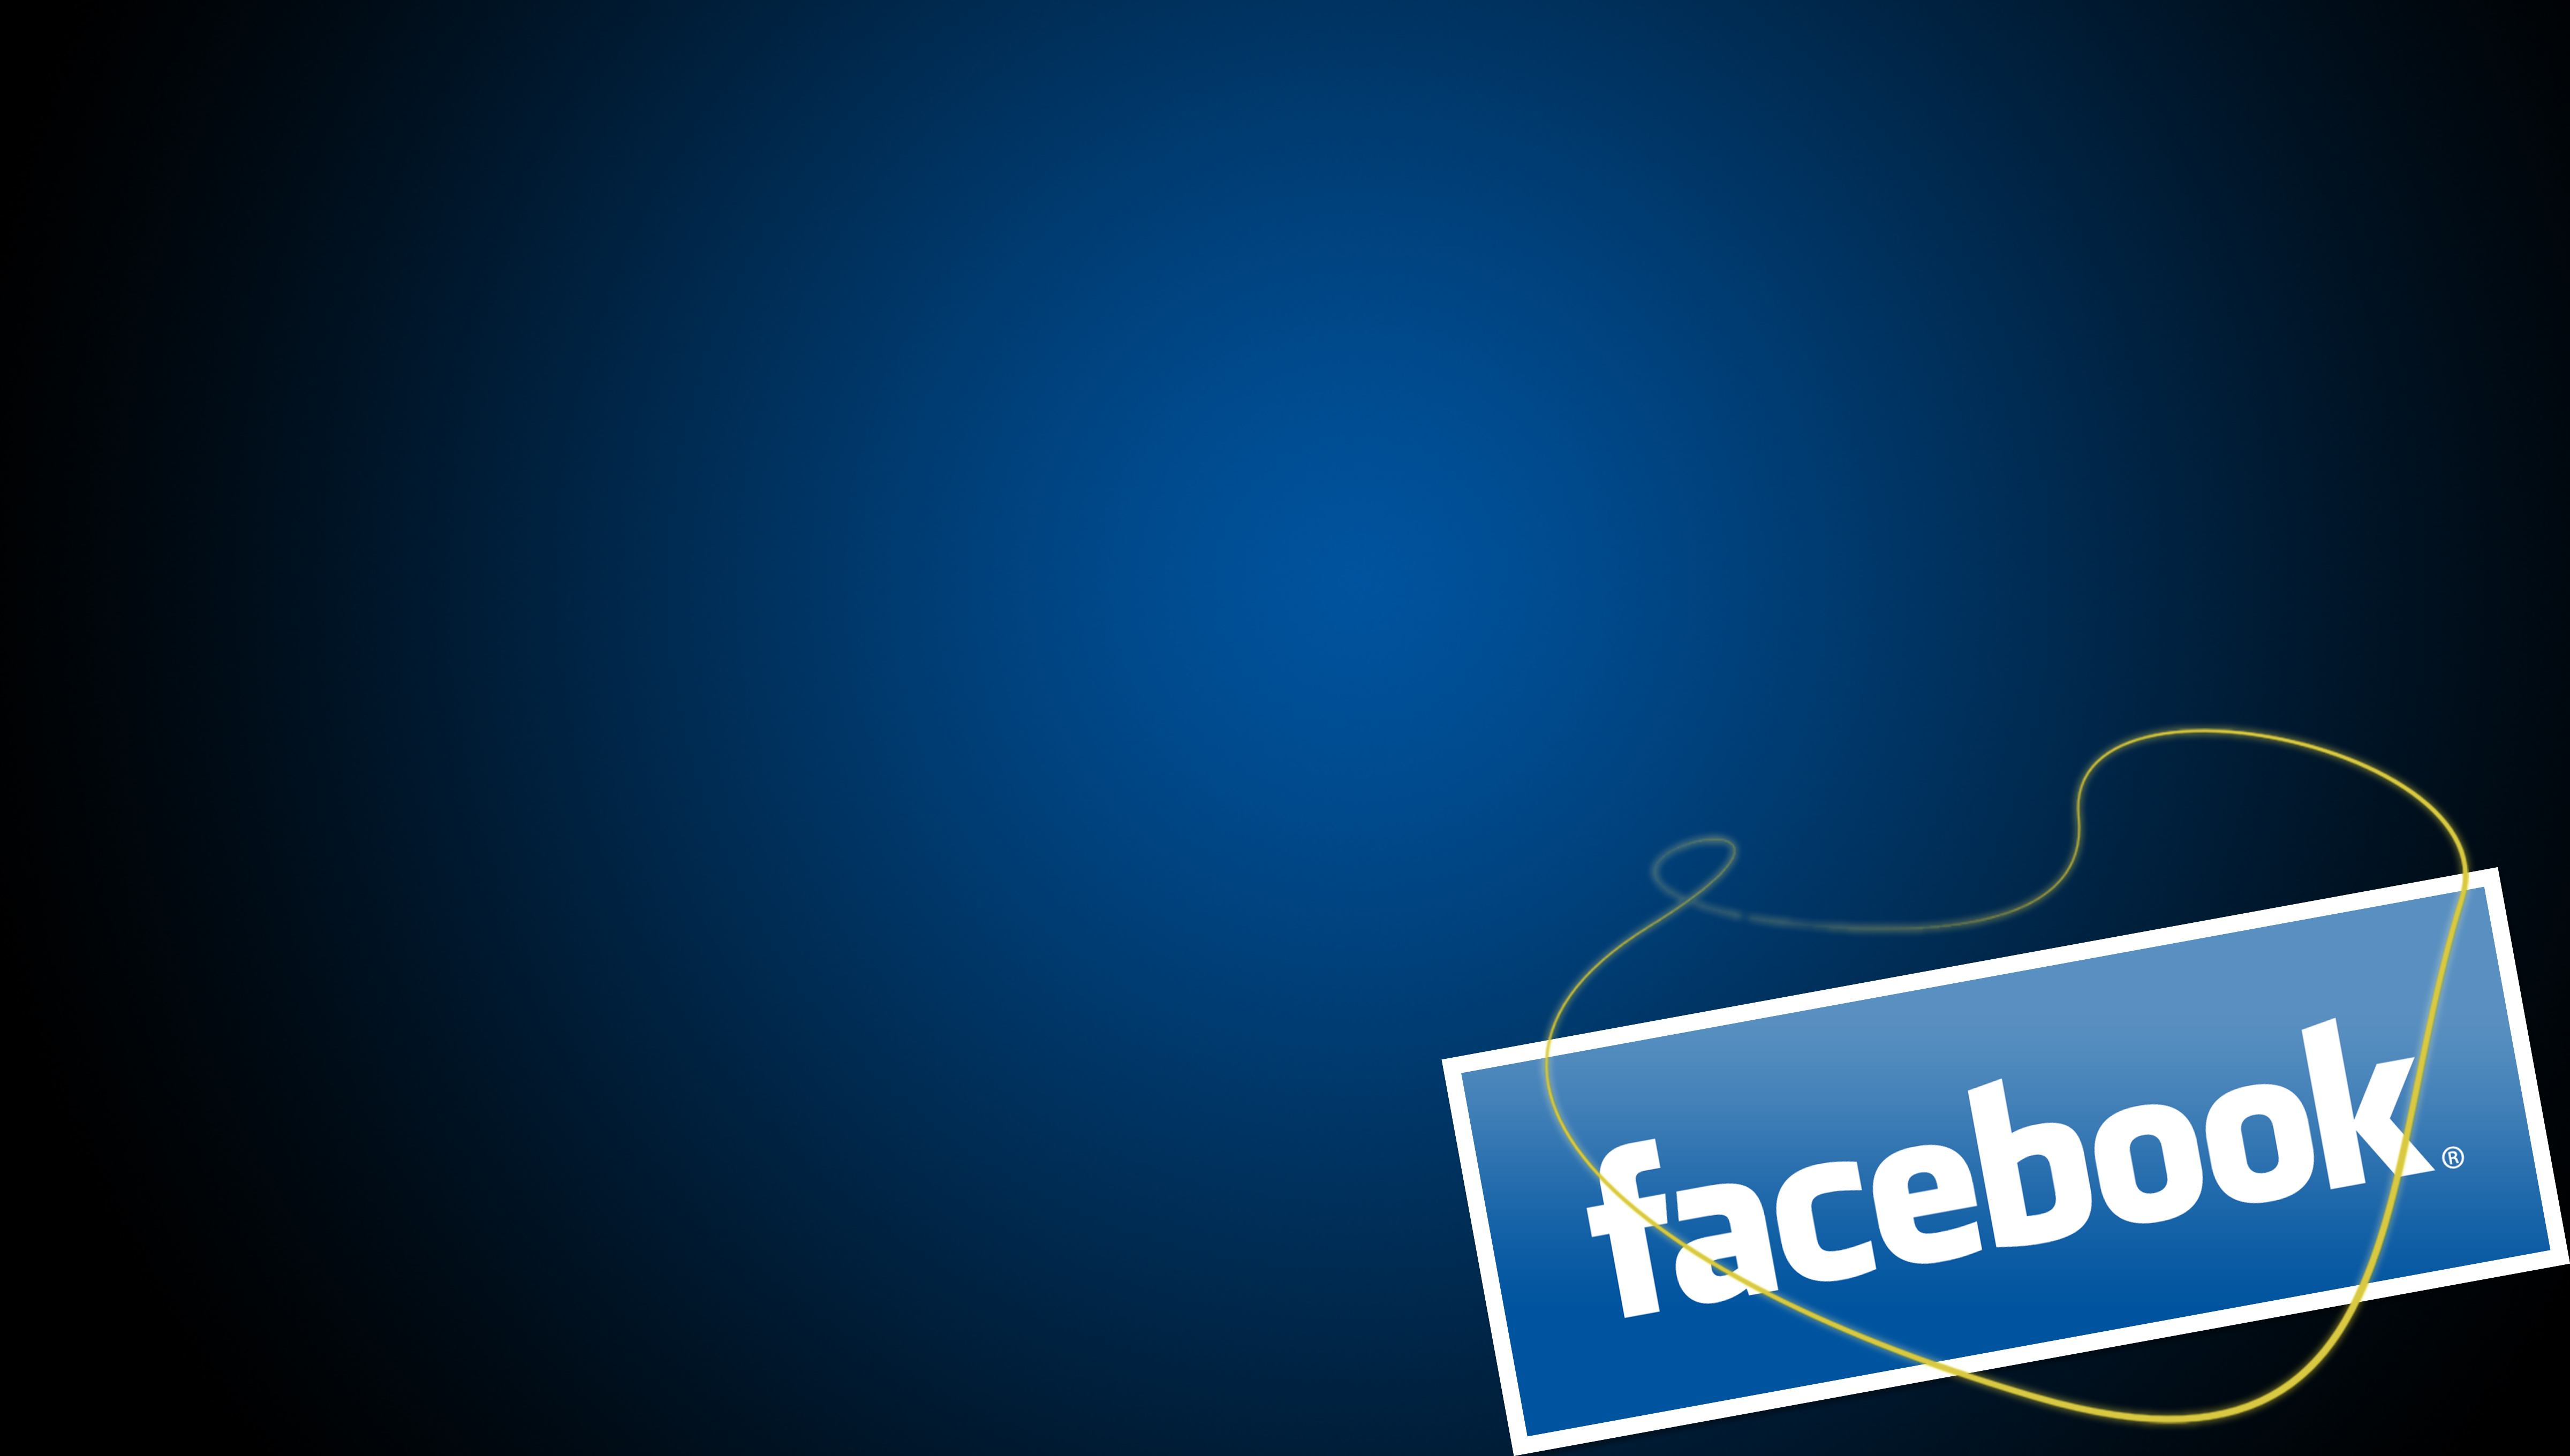 imágenes de fondo de pantalla para facebook,azul,texto,fuente,diseño gráfico,azul eléctrico